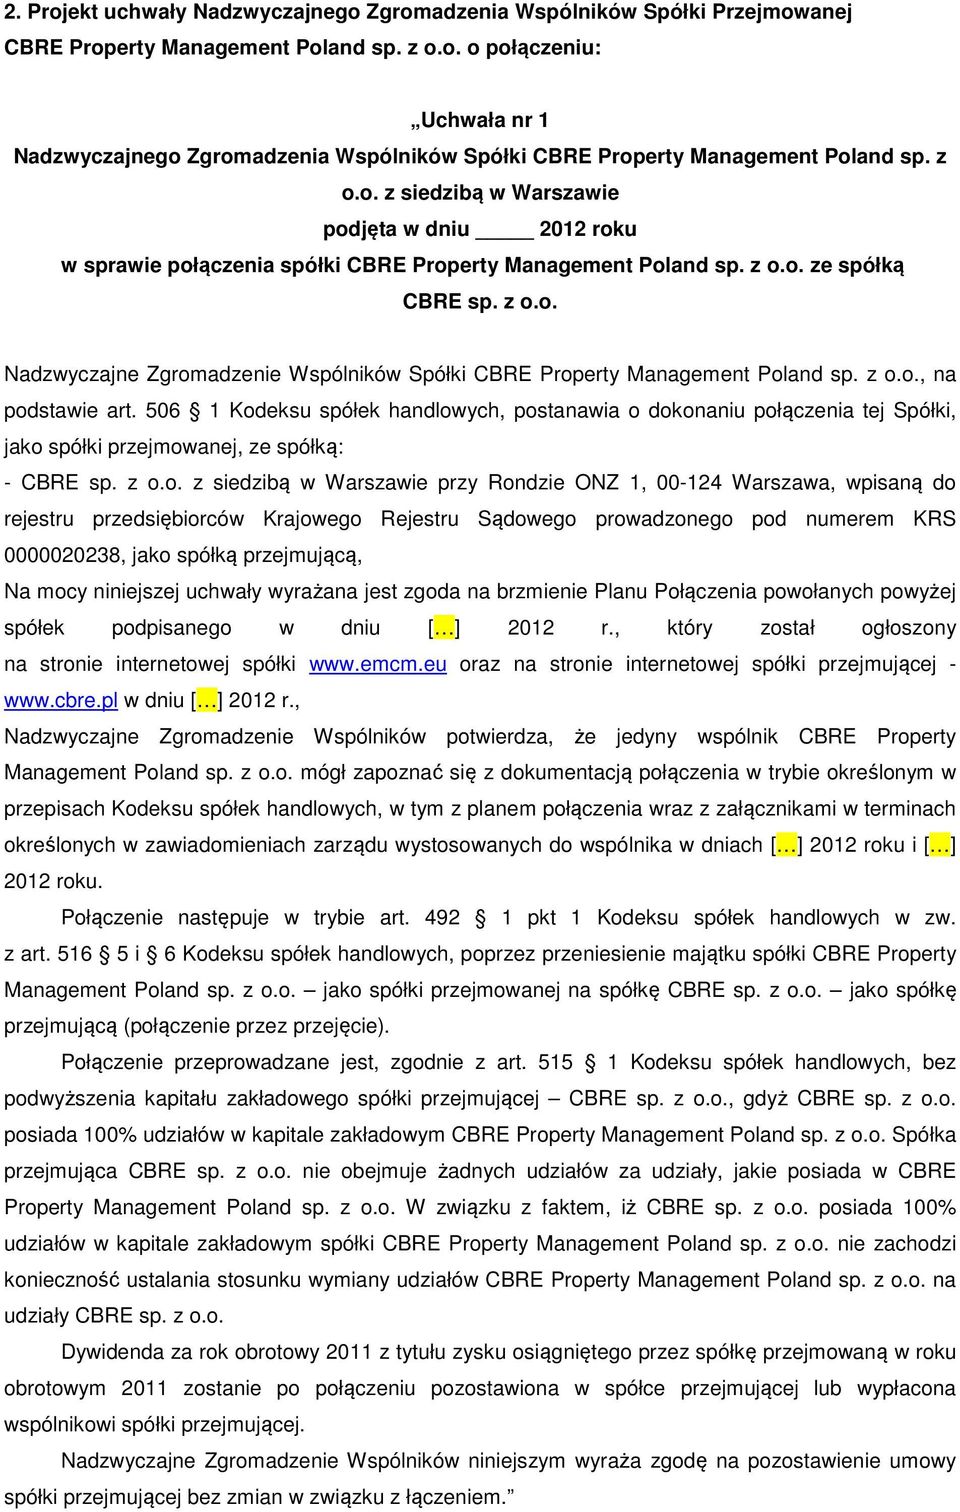 z o.o., na podstawie art. 506 1 Kodeksu spółek handlowych, postanawia o dokonaniu połączenia tej Spółki, jako spółki przejmowanej, ze spółką: - CBRE sp. z o.o. z siedzibą w Warszawie przy Rondzie ONZ